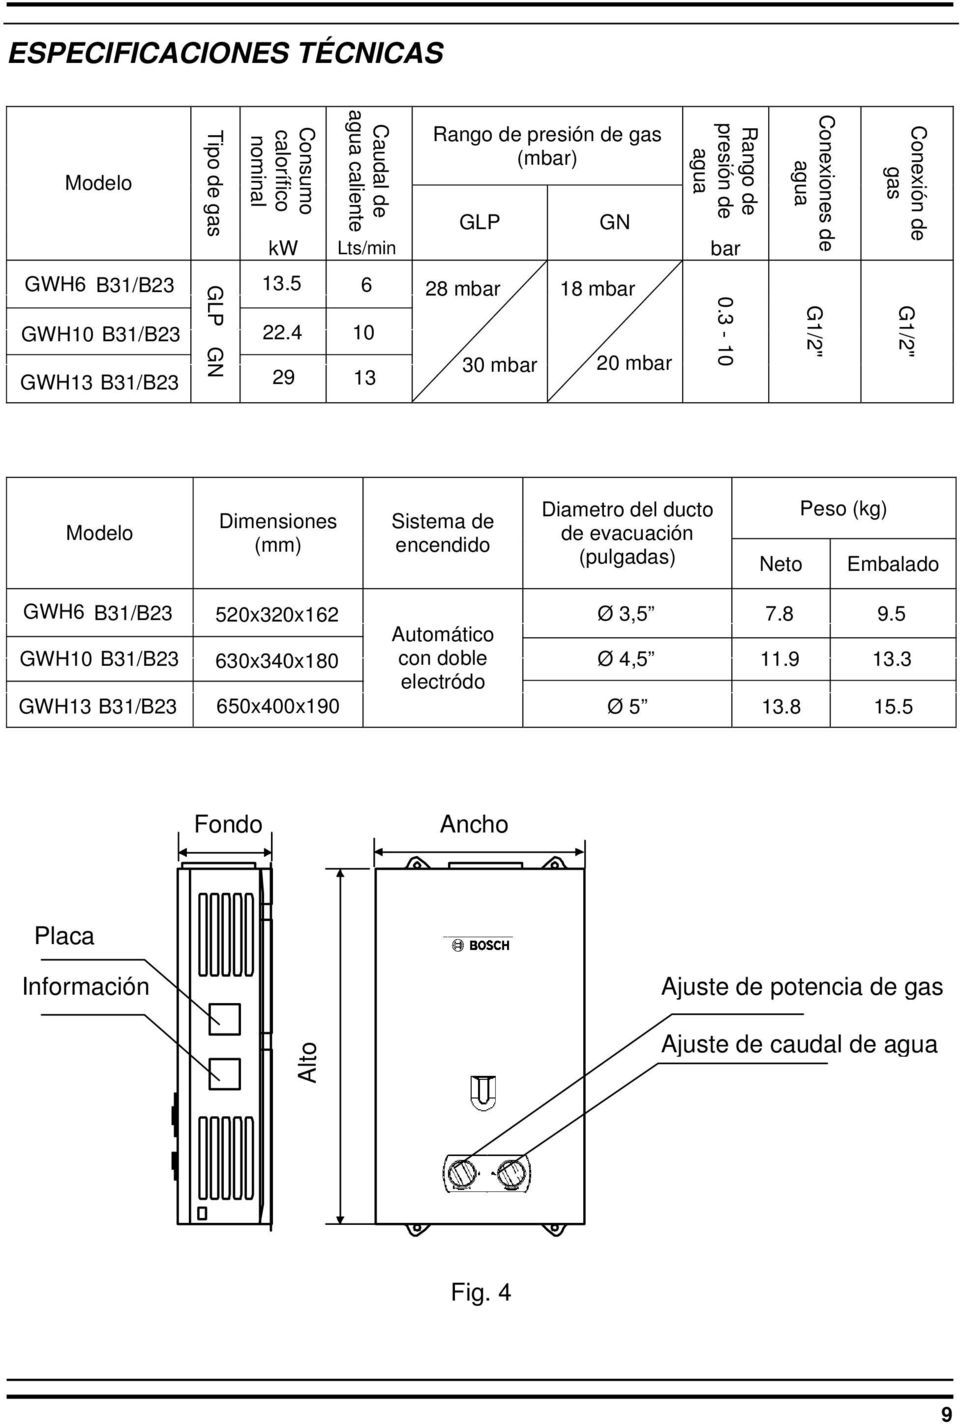 3-10 G1/2" G1/2" Modelo Dimensiones (mm) Sistema de encendido Diametro del ducto Peso (kg) de evacuación (pulgadas) Neto Embalado GWH6 B31/B23 GWH10 B31/B23 GWH13 B31/B23